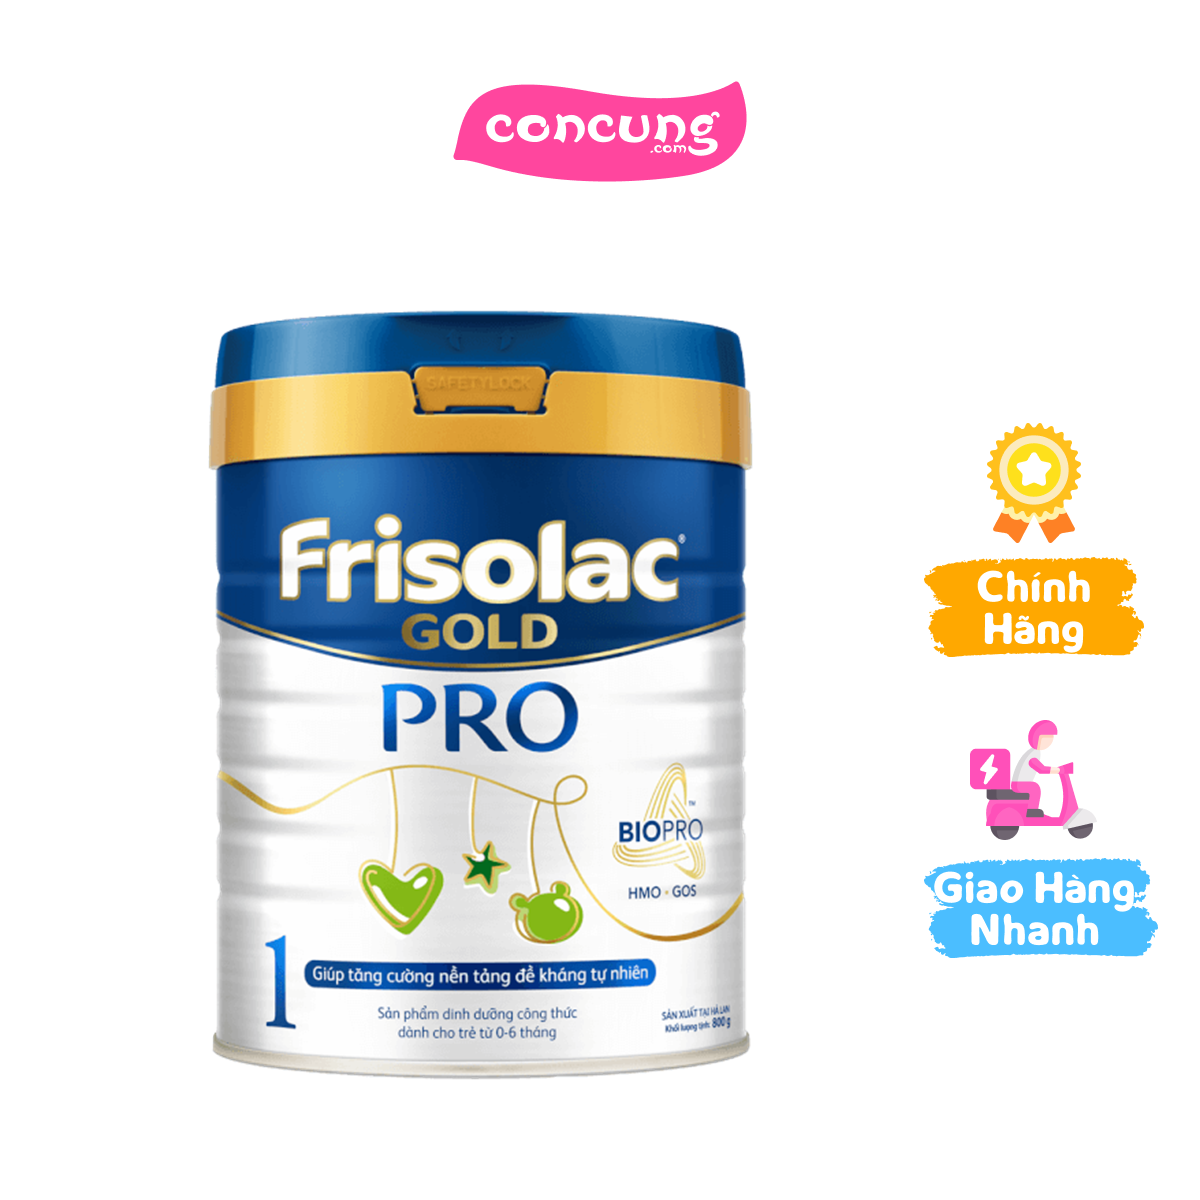 Frisolac Gold Pro số 1, 800g 0-6 tháng